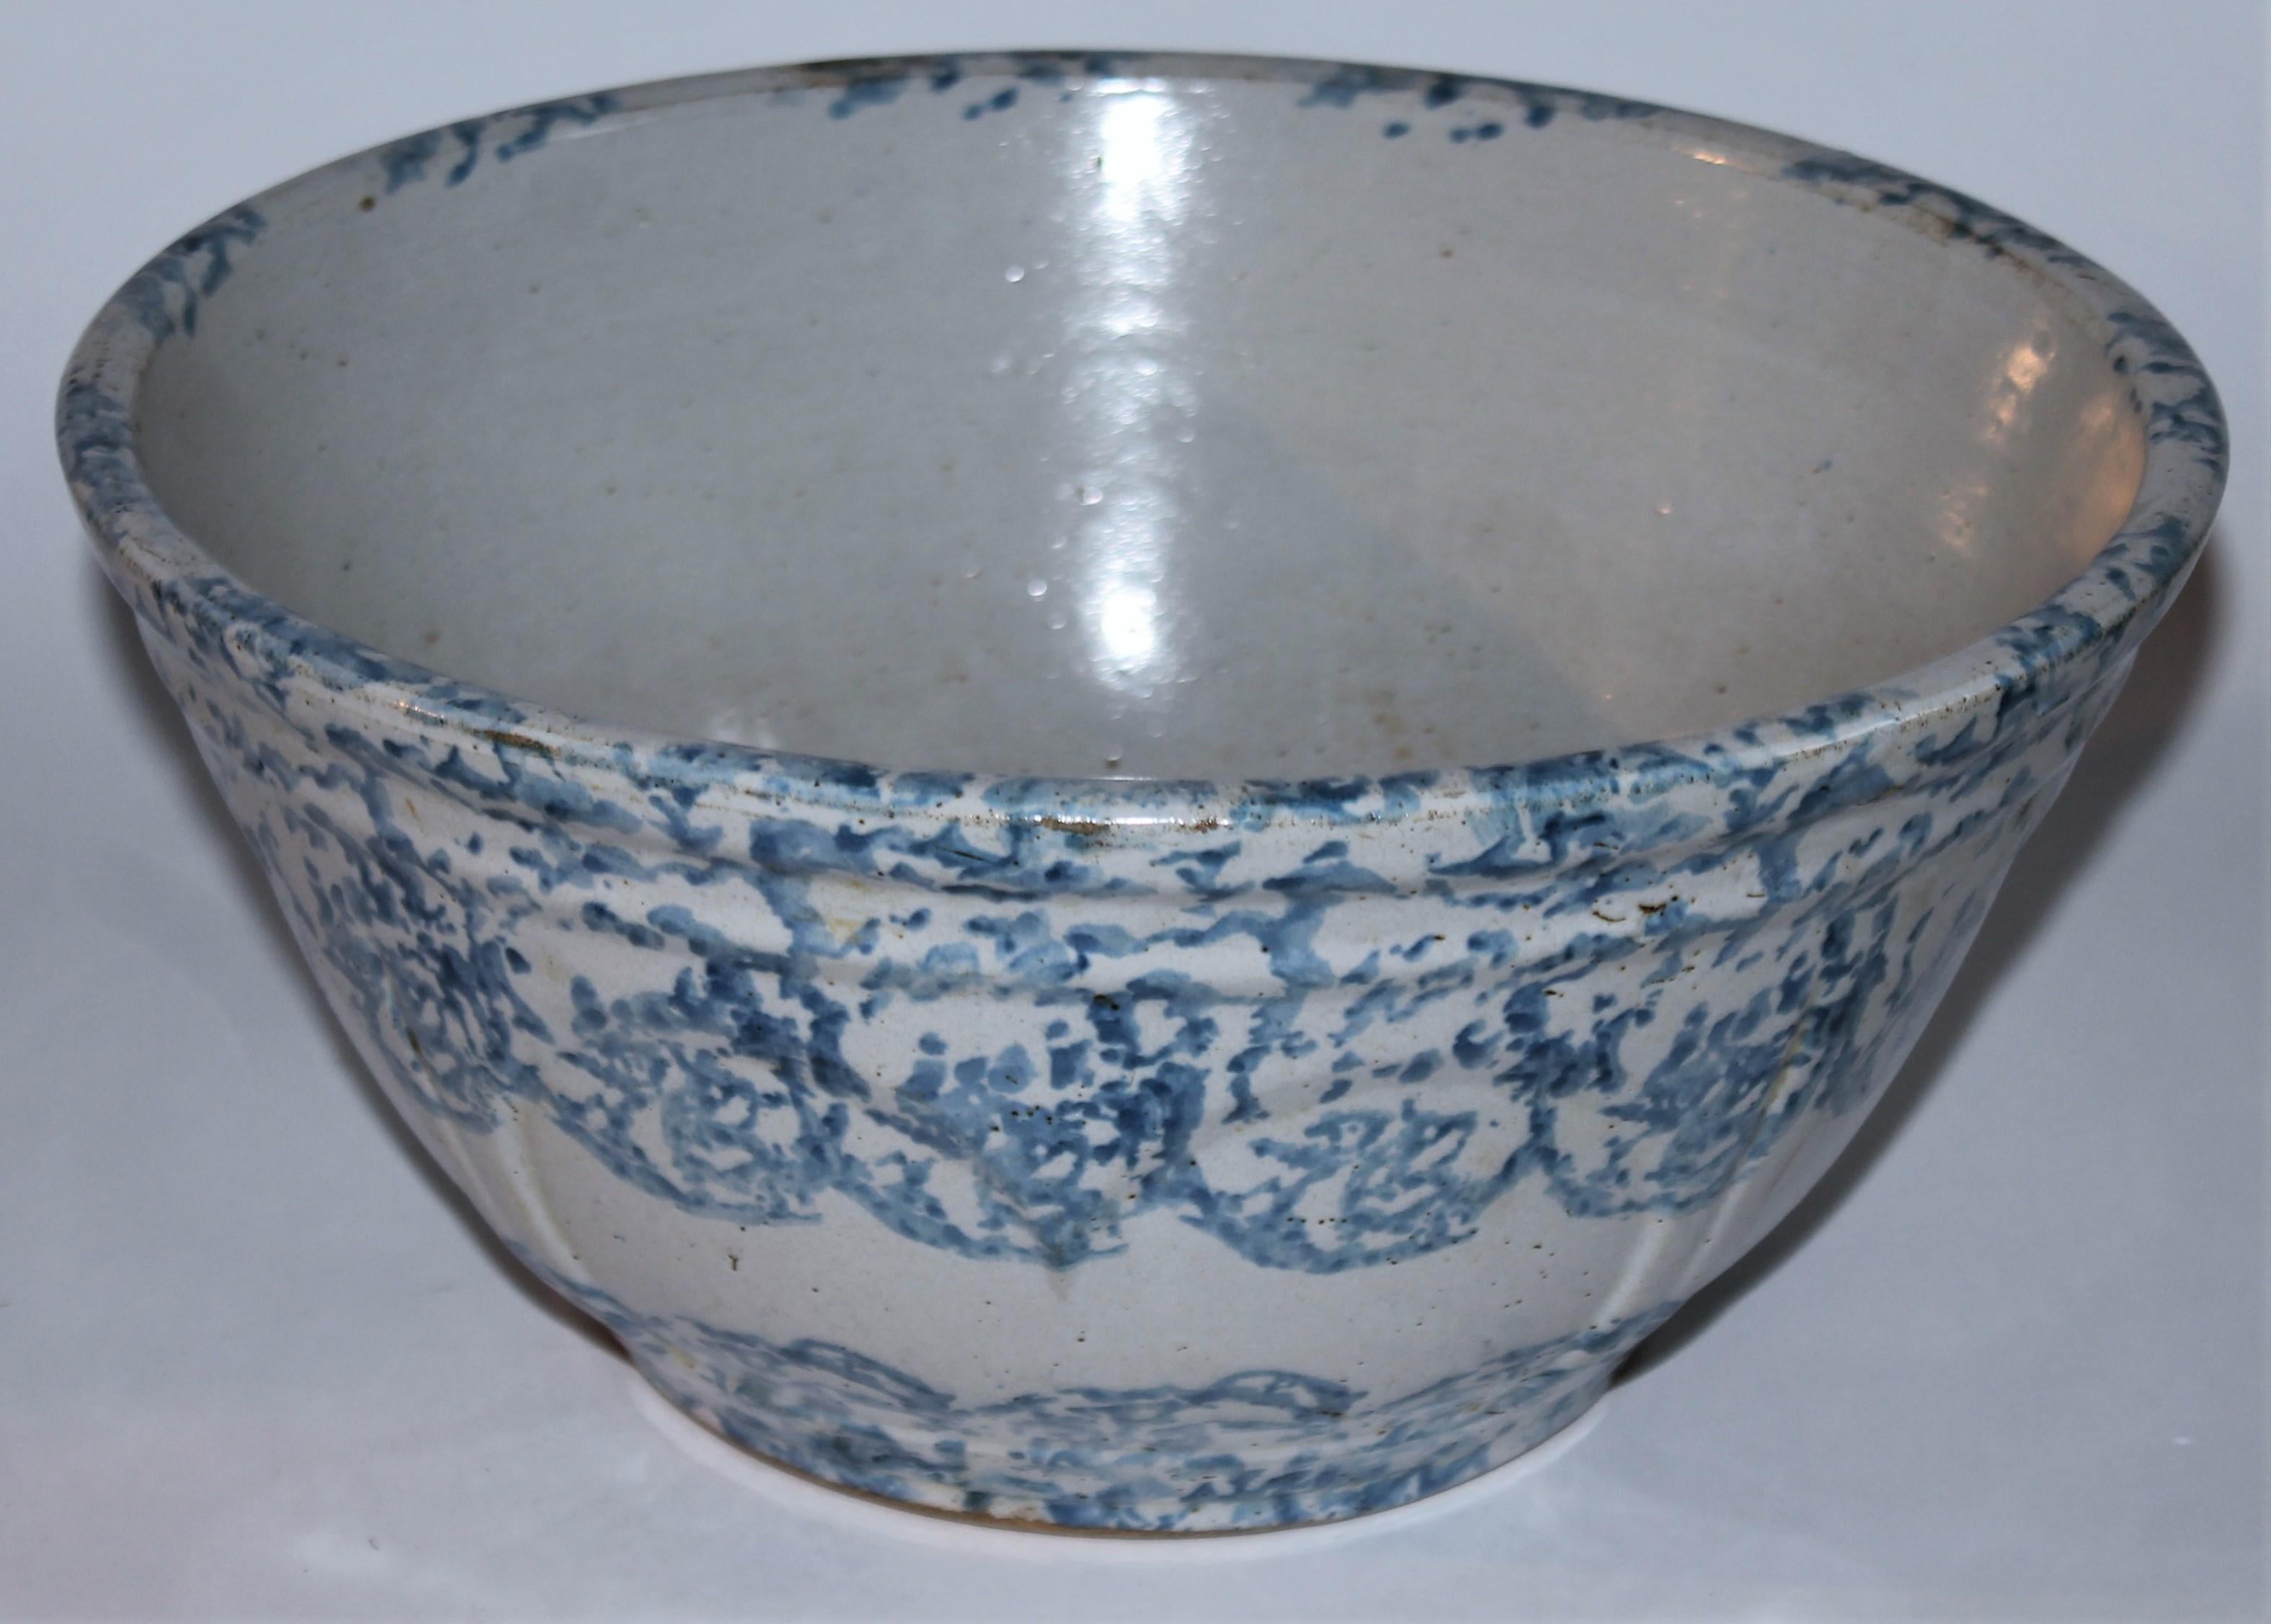 Ce grand bol à mélanger ou à servir en poterie éponge du 19e siècle est en bon état. C'est une belle couleur plus claire ou bleu ciel. Idéal pour servir des salades ou des salades de fruits à la table du dîner.